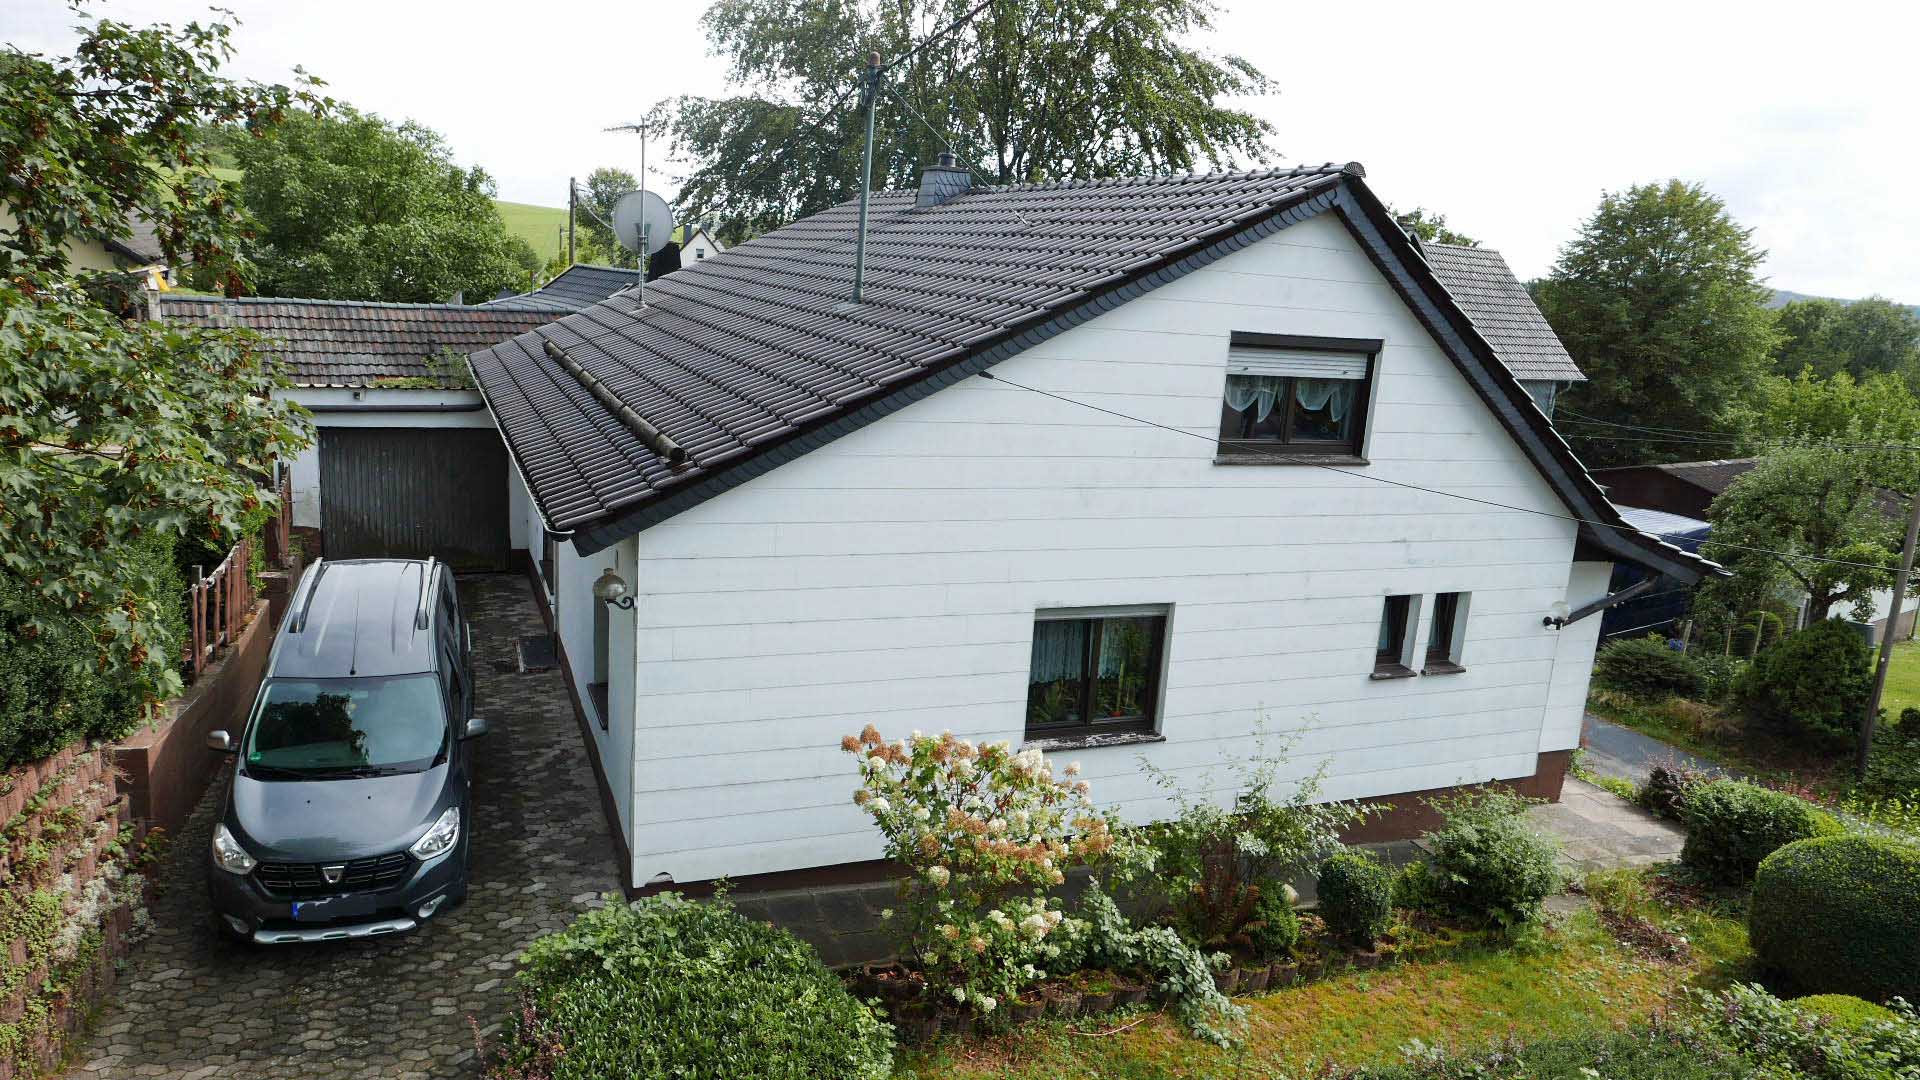 Morsbach-Steimelhagen: Modernisiertes Einfamilienhaus, Garage hinter dem Haus. Dach 1999 erneuert